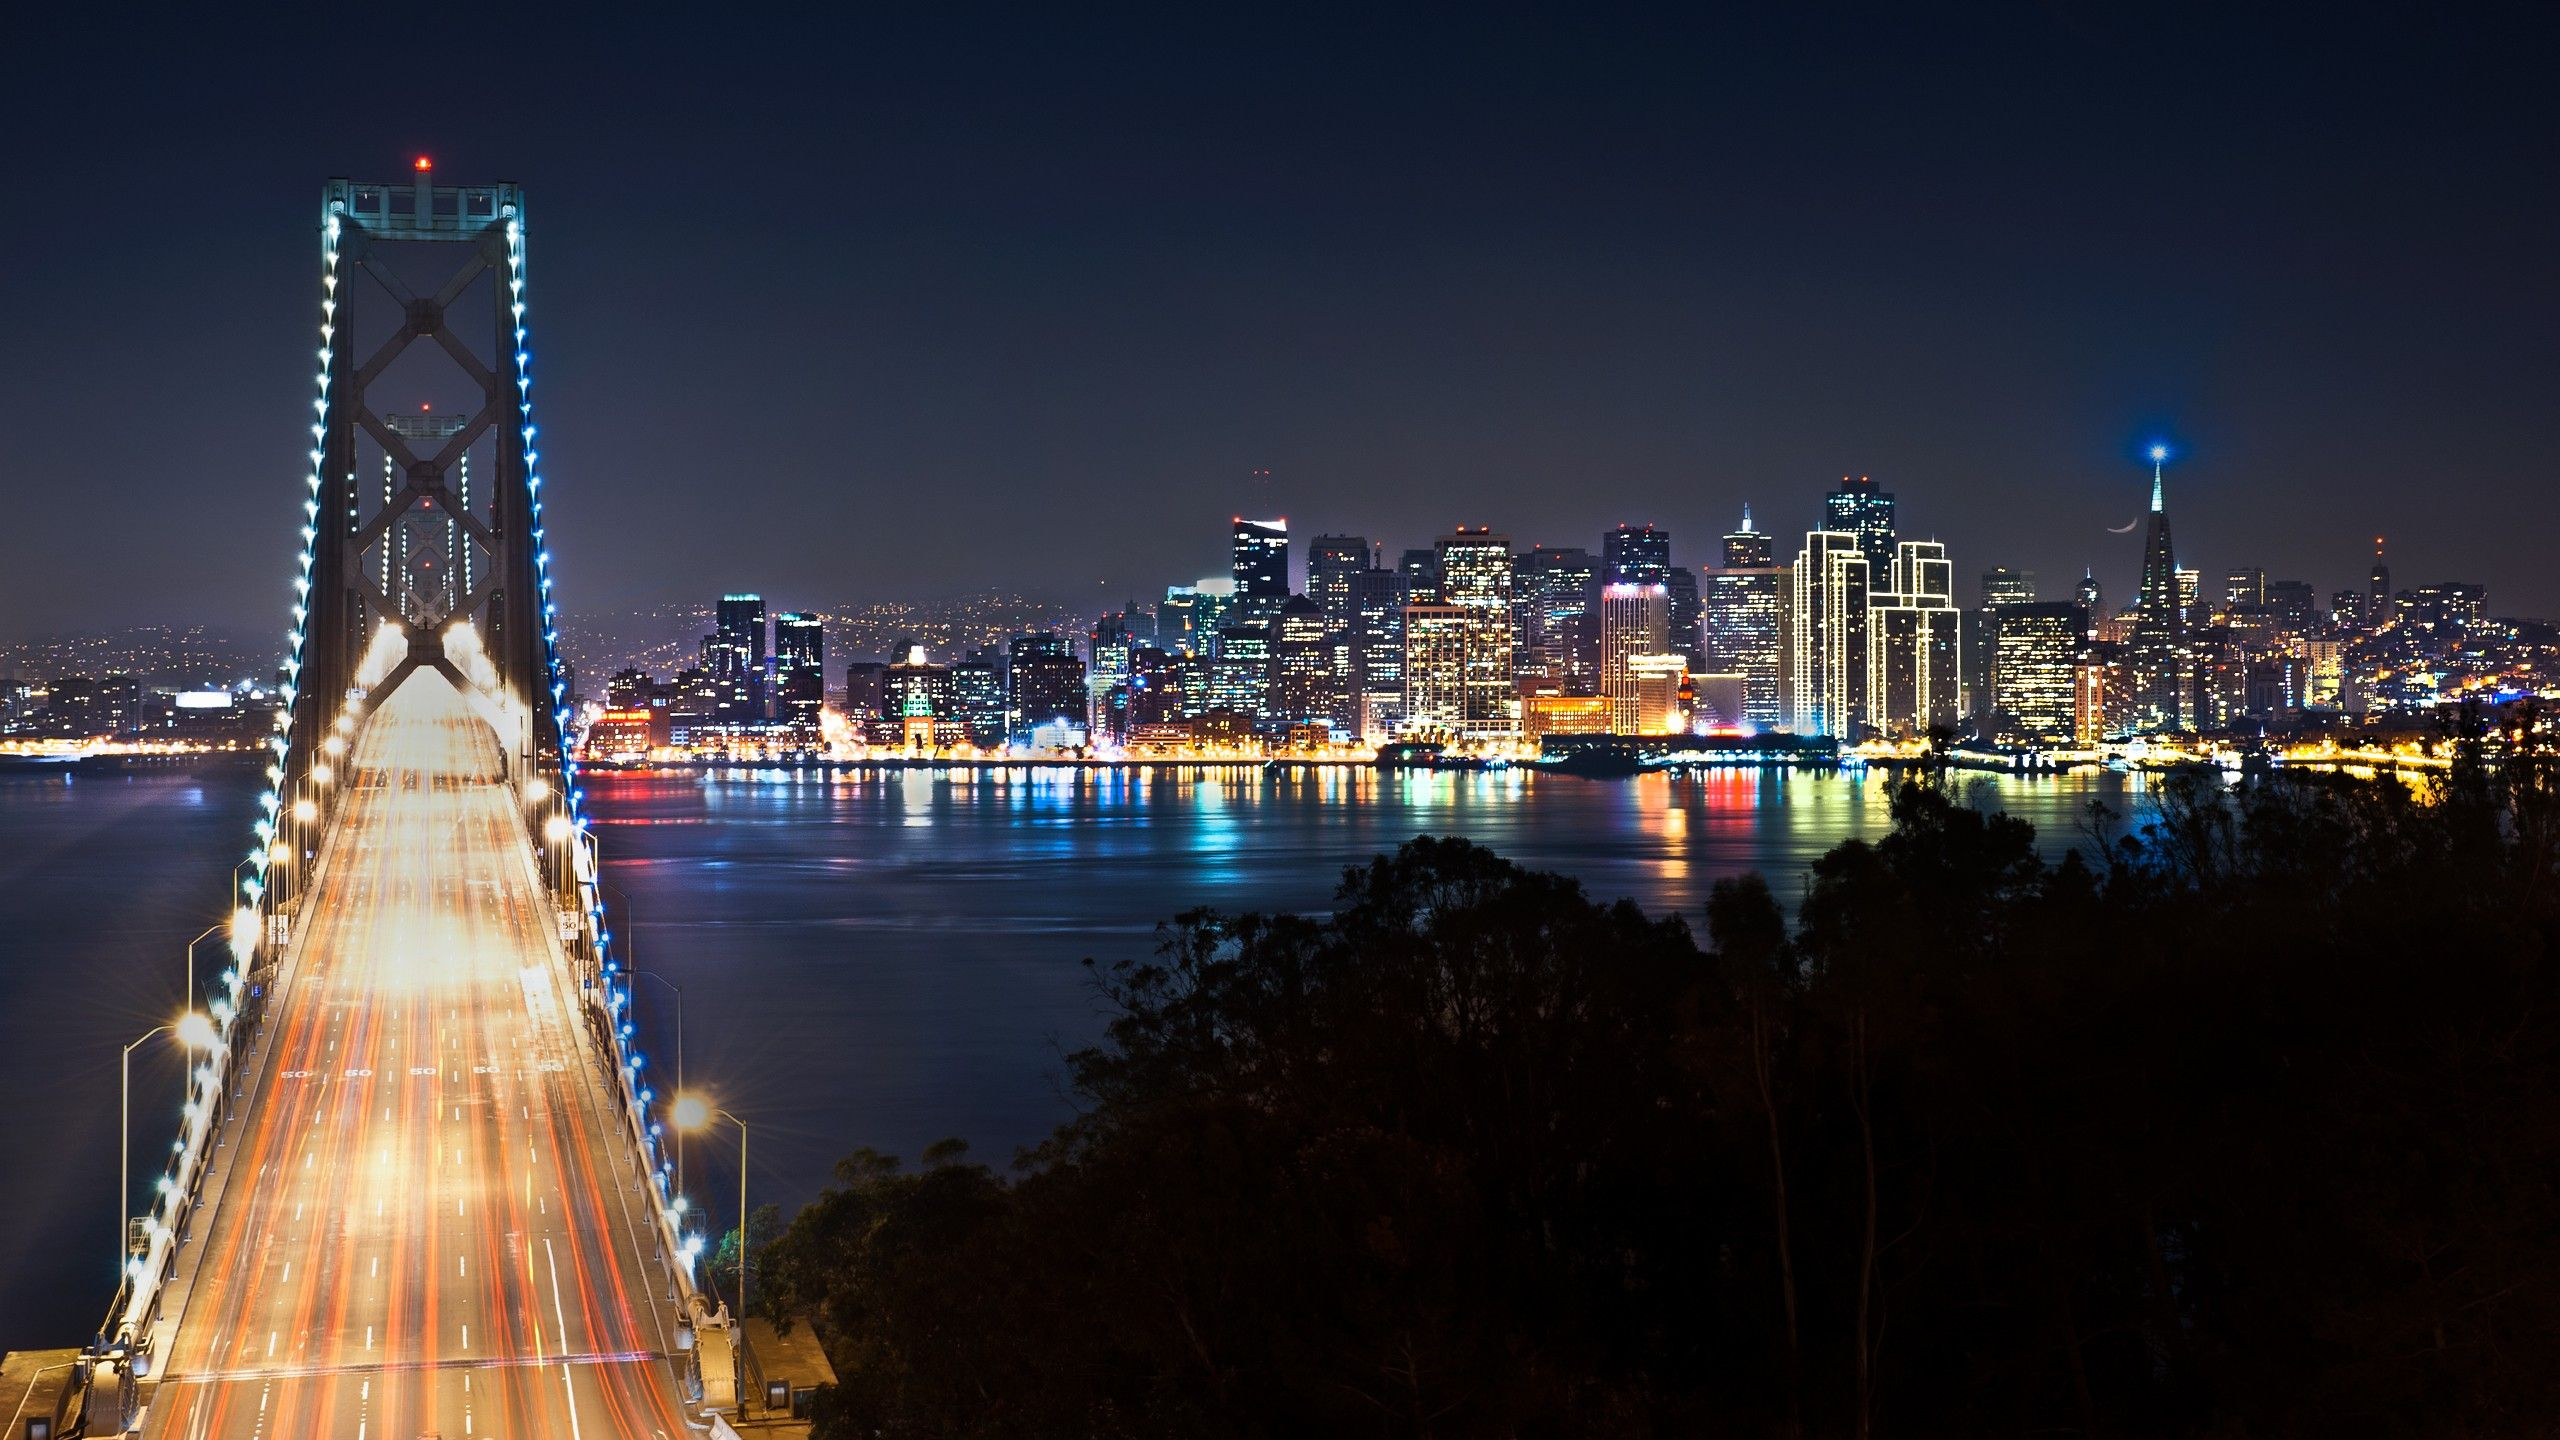 2560x1440 San Francisco city at night | San francisco at night, San francisco skyline, San francisco wallpaper